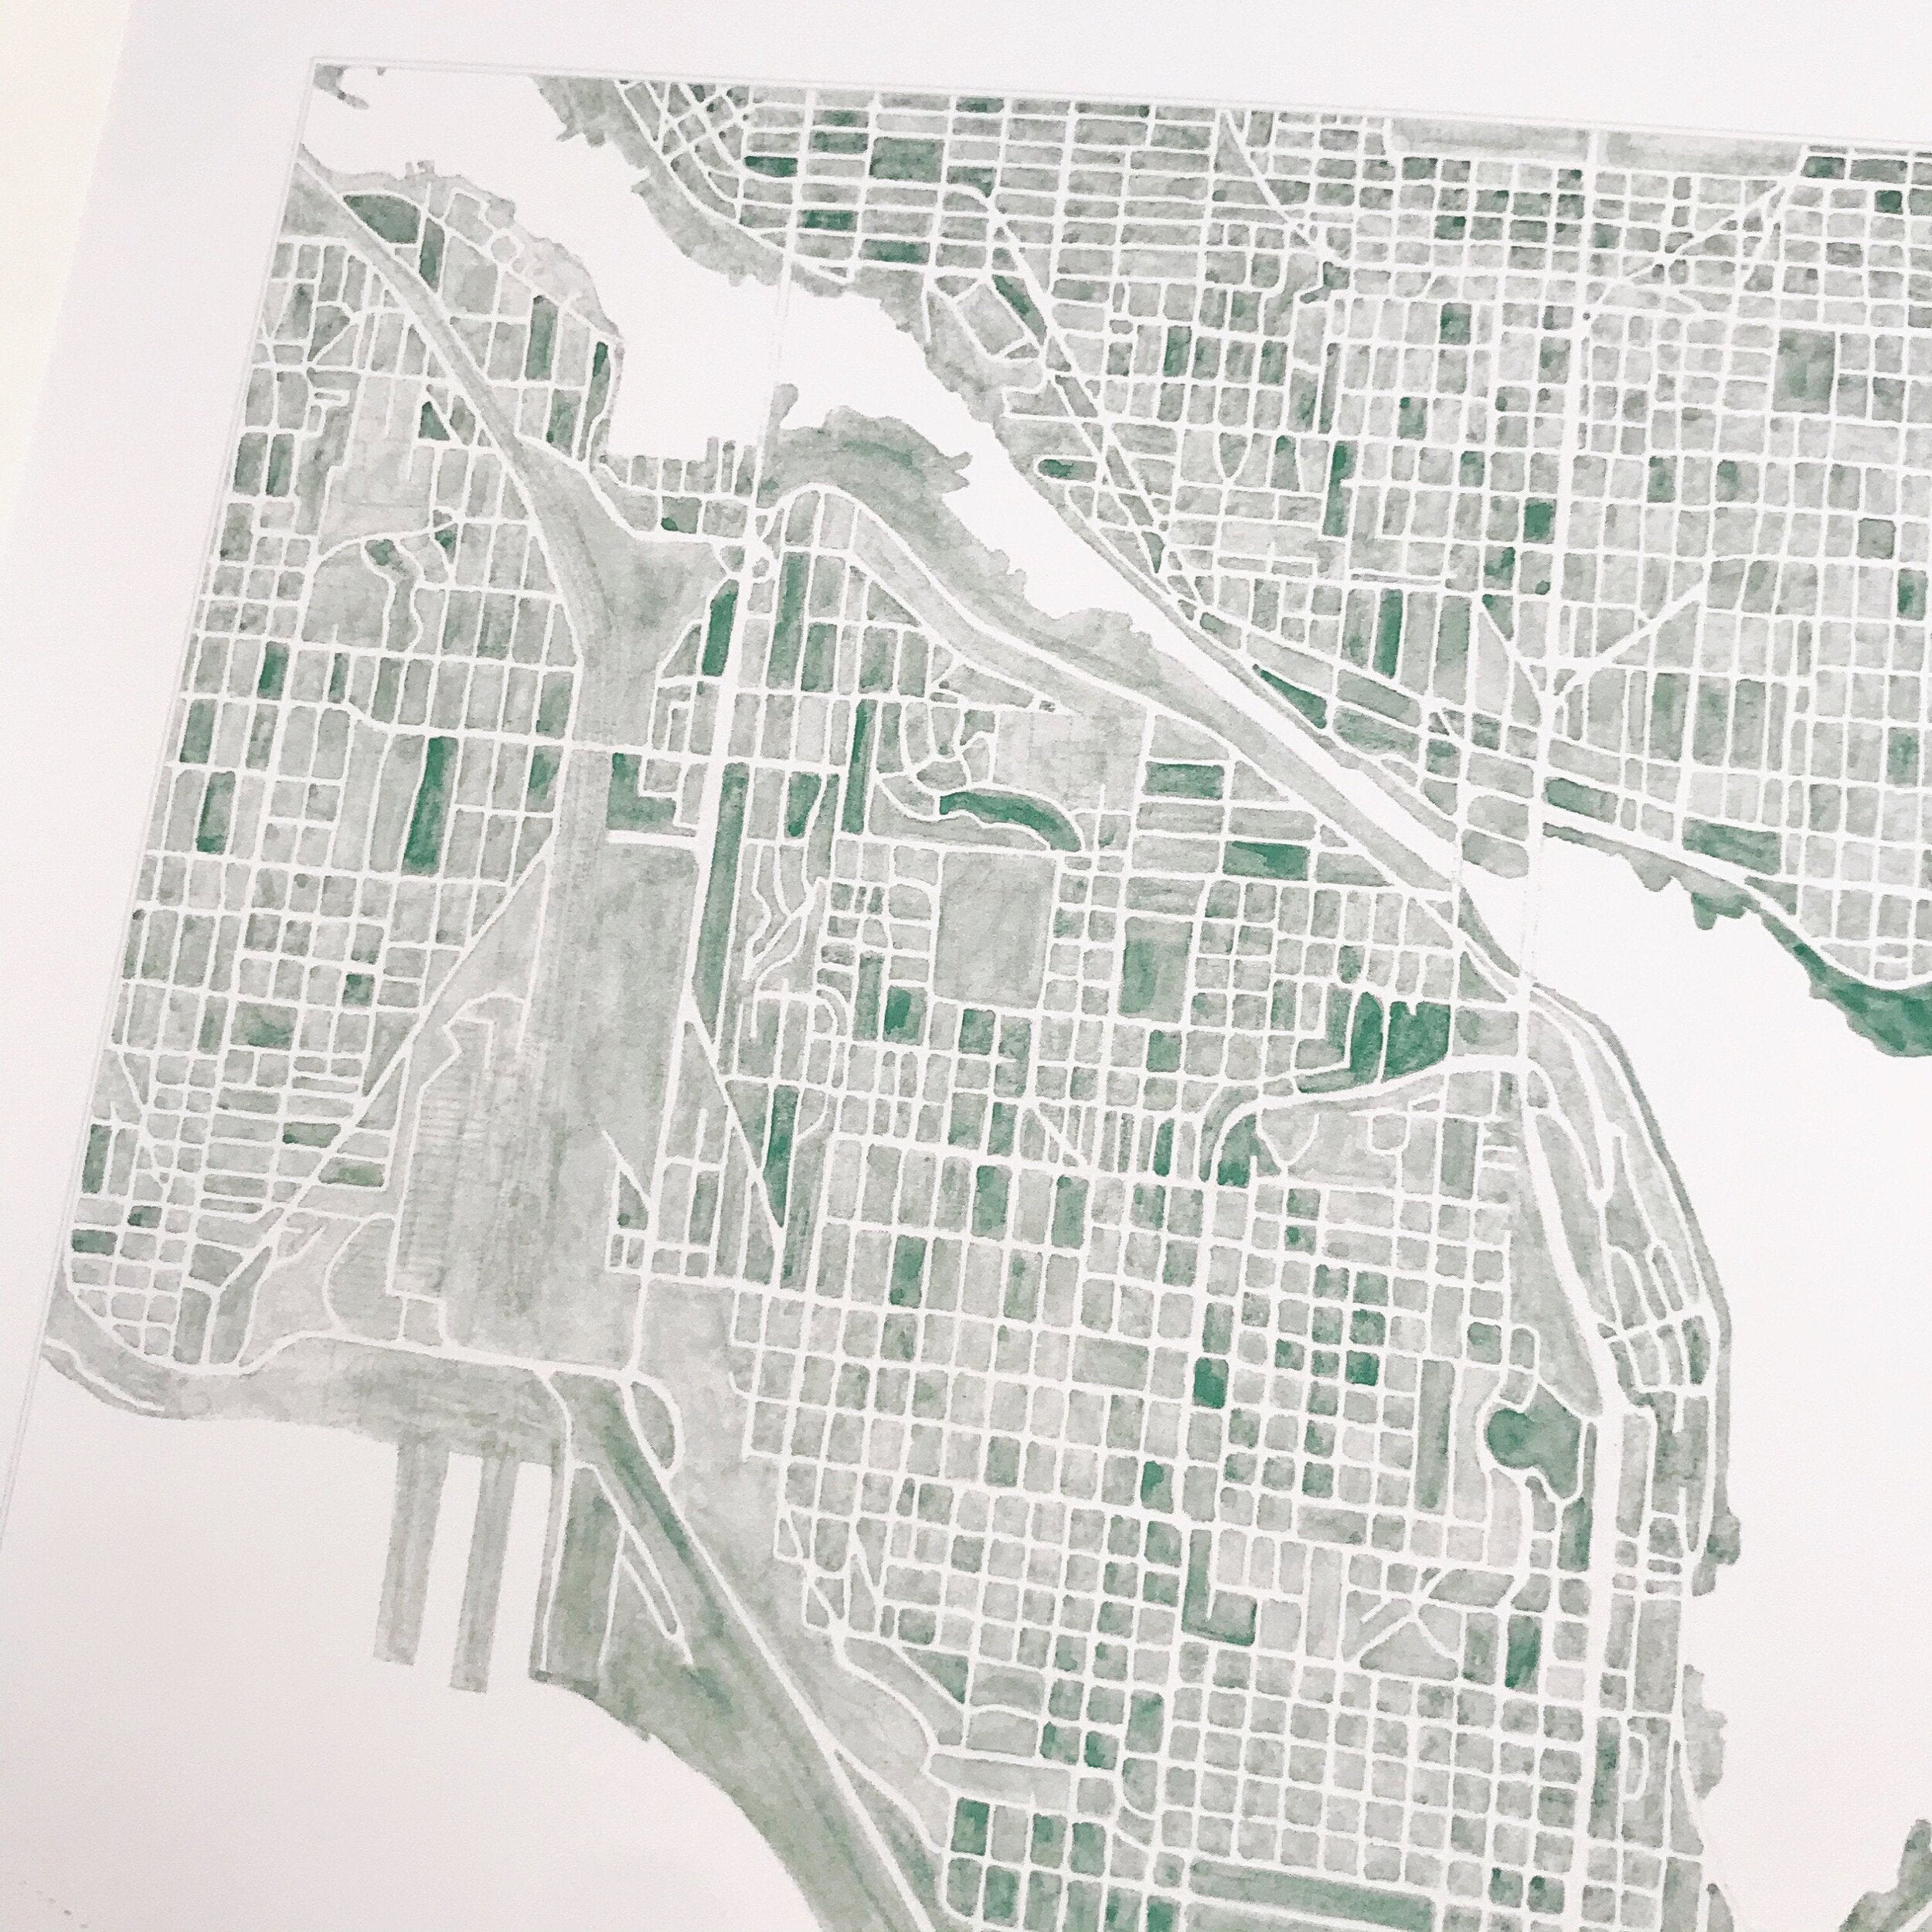 SEATTLE Lake Union Watercolor City Blocks Map: PRINT